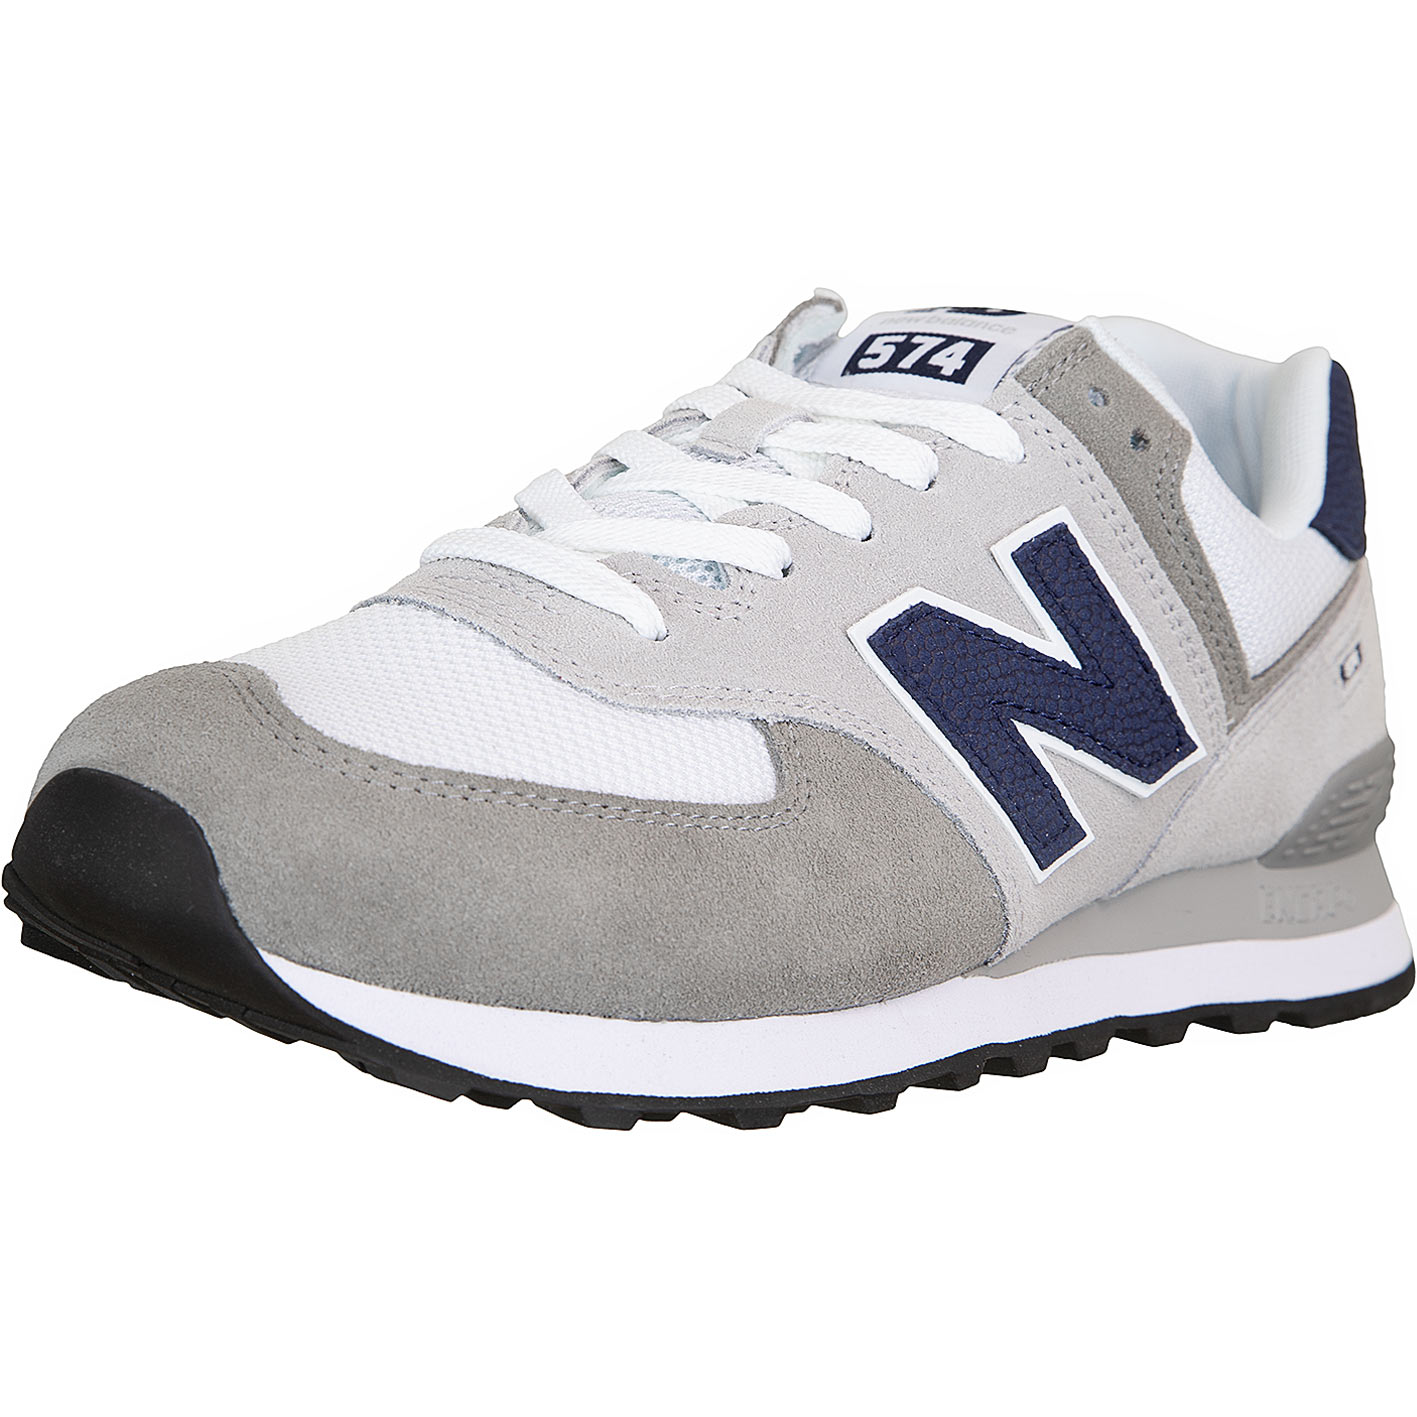 ☆ New Balance Sneaker 574 grau - hier bestellen!